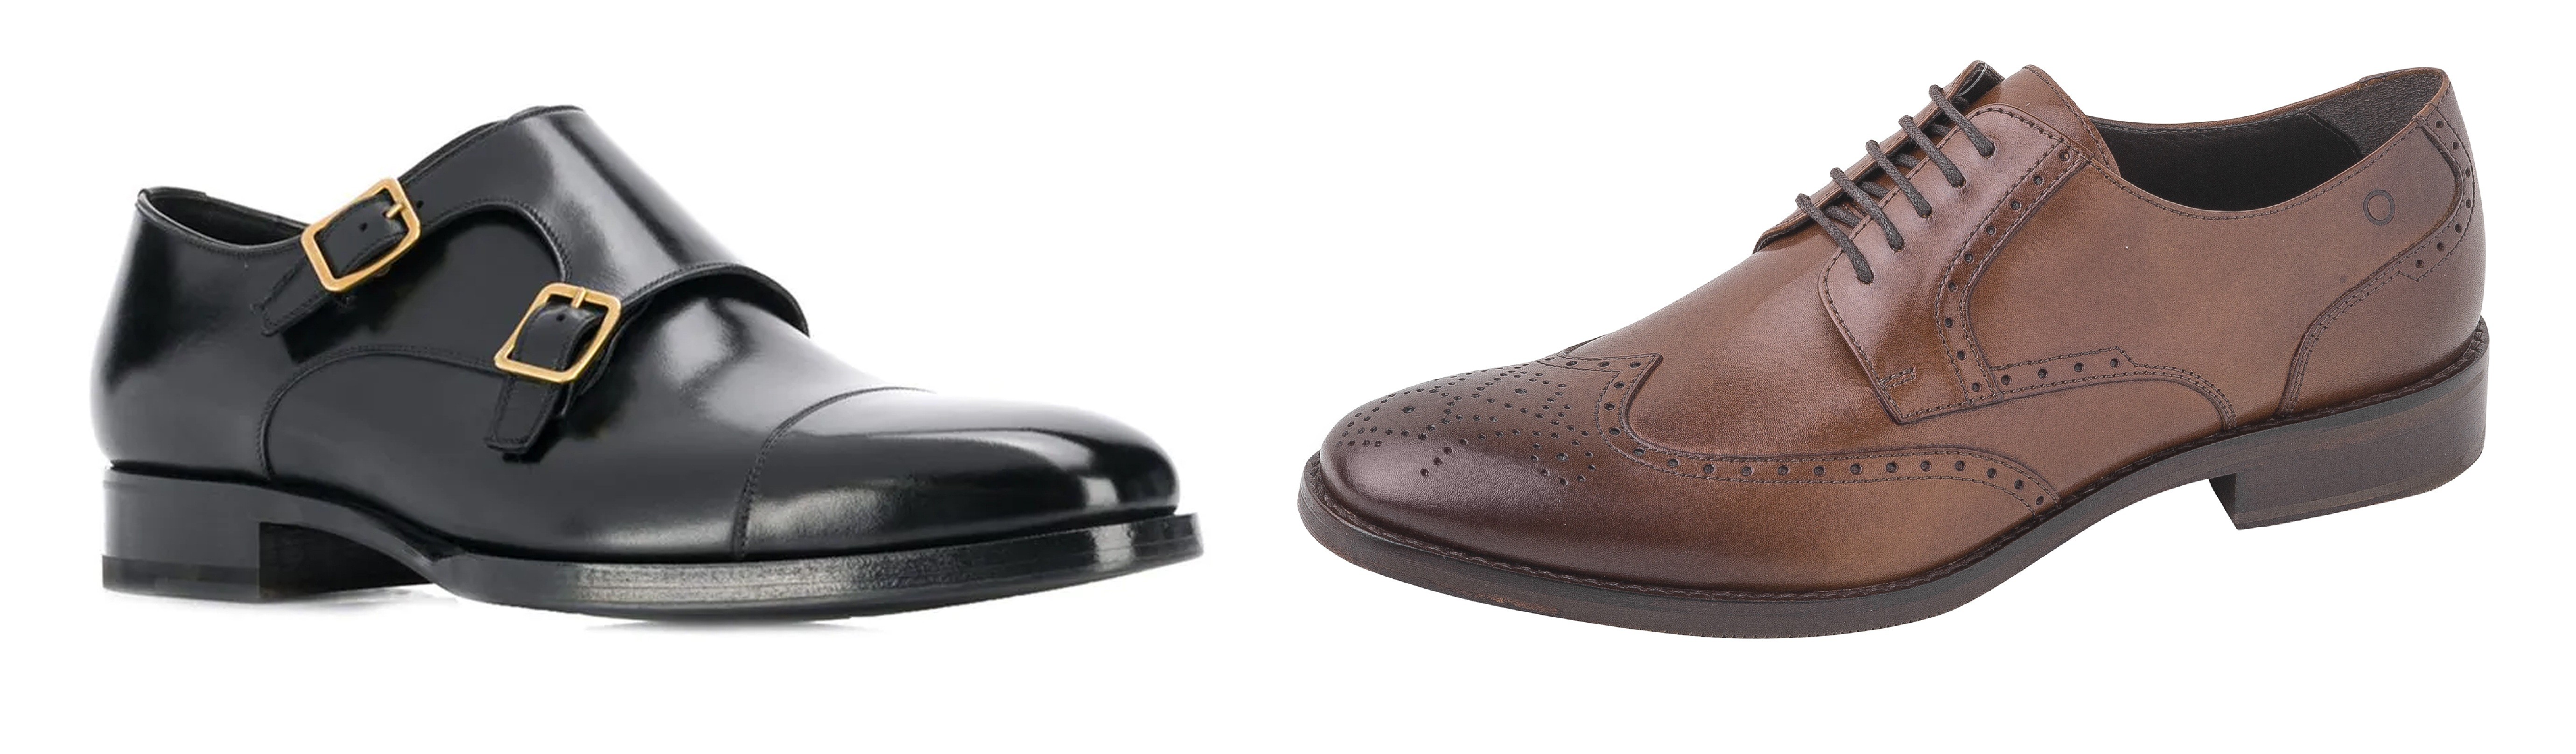 Sapato, Tom Ford, R$ 9.660, e sapato, Democrata, R$ 400 (Foto: Divulgação)